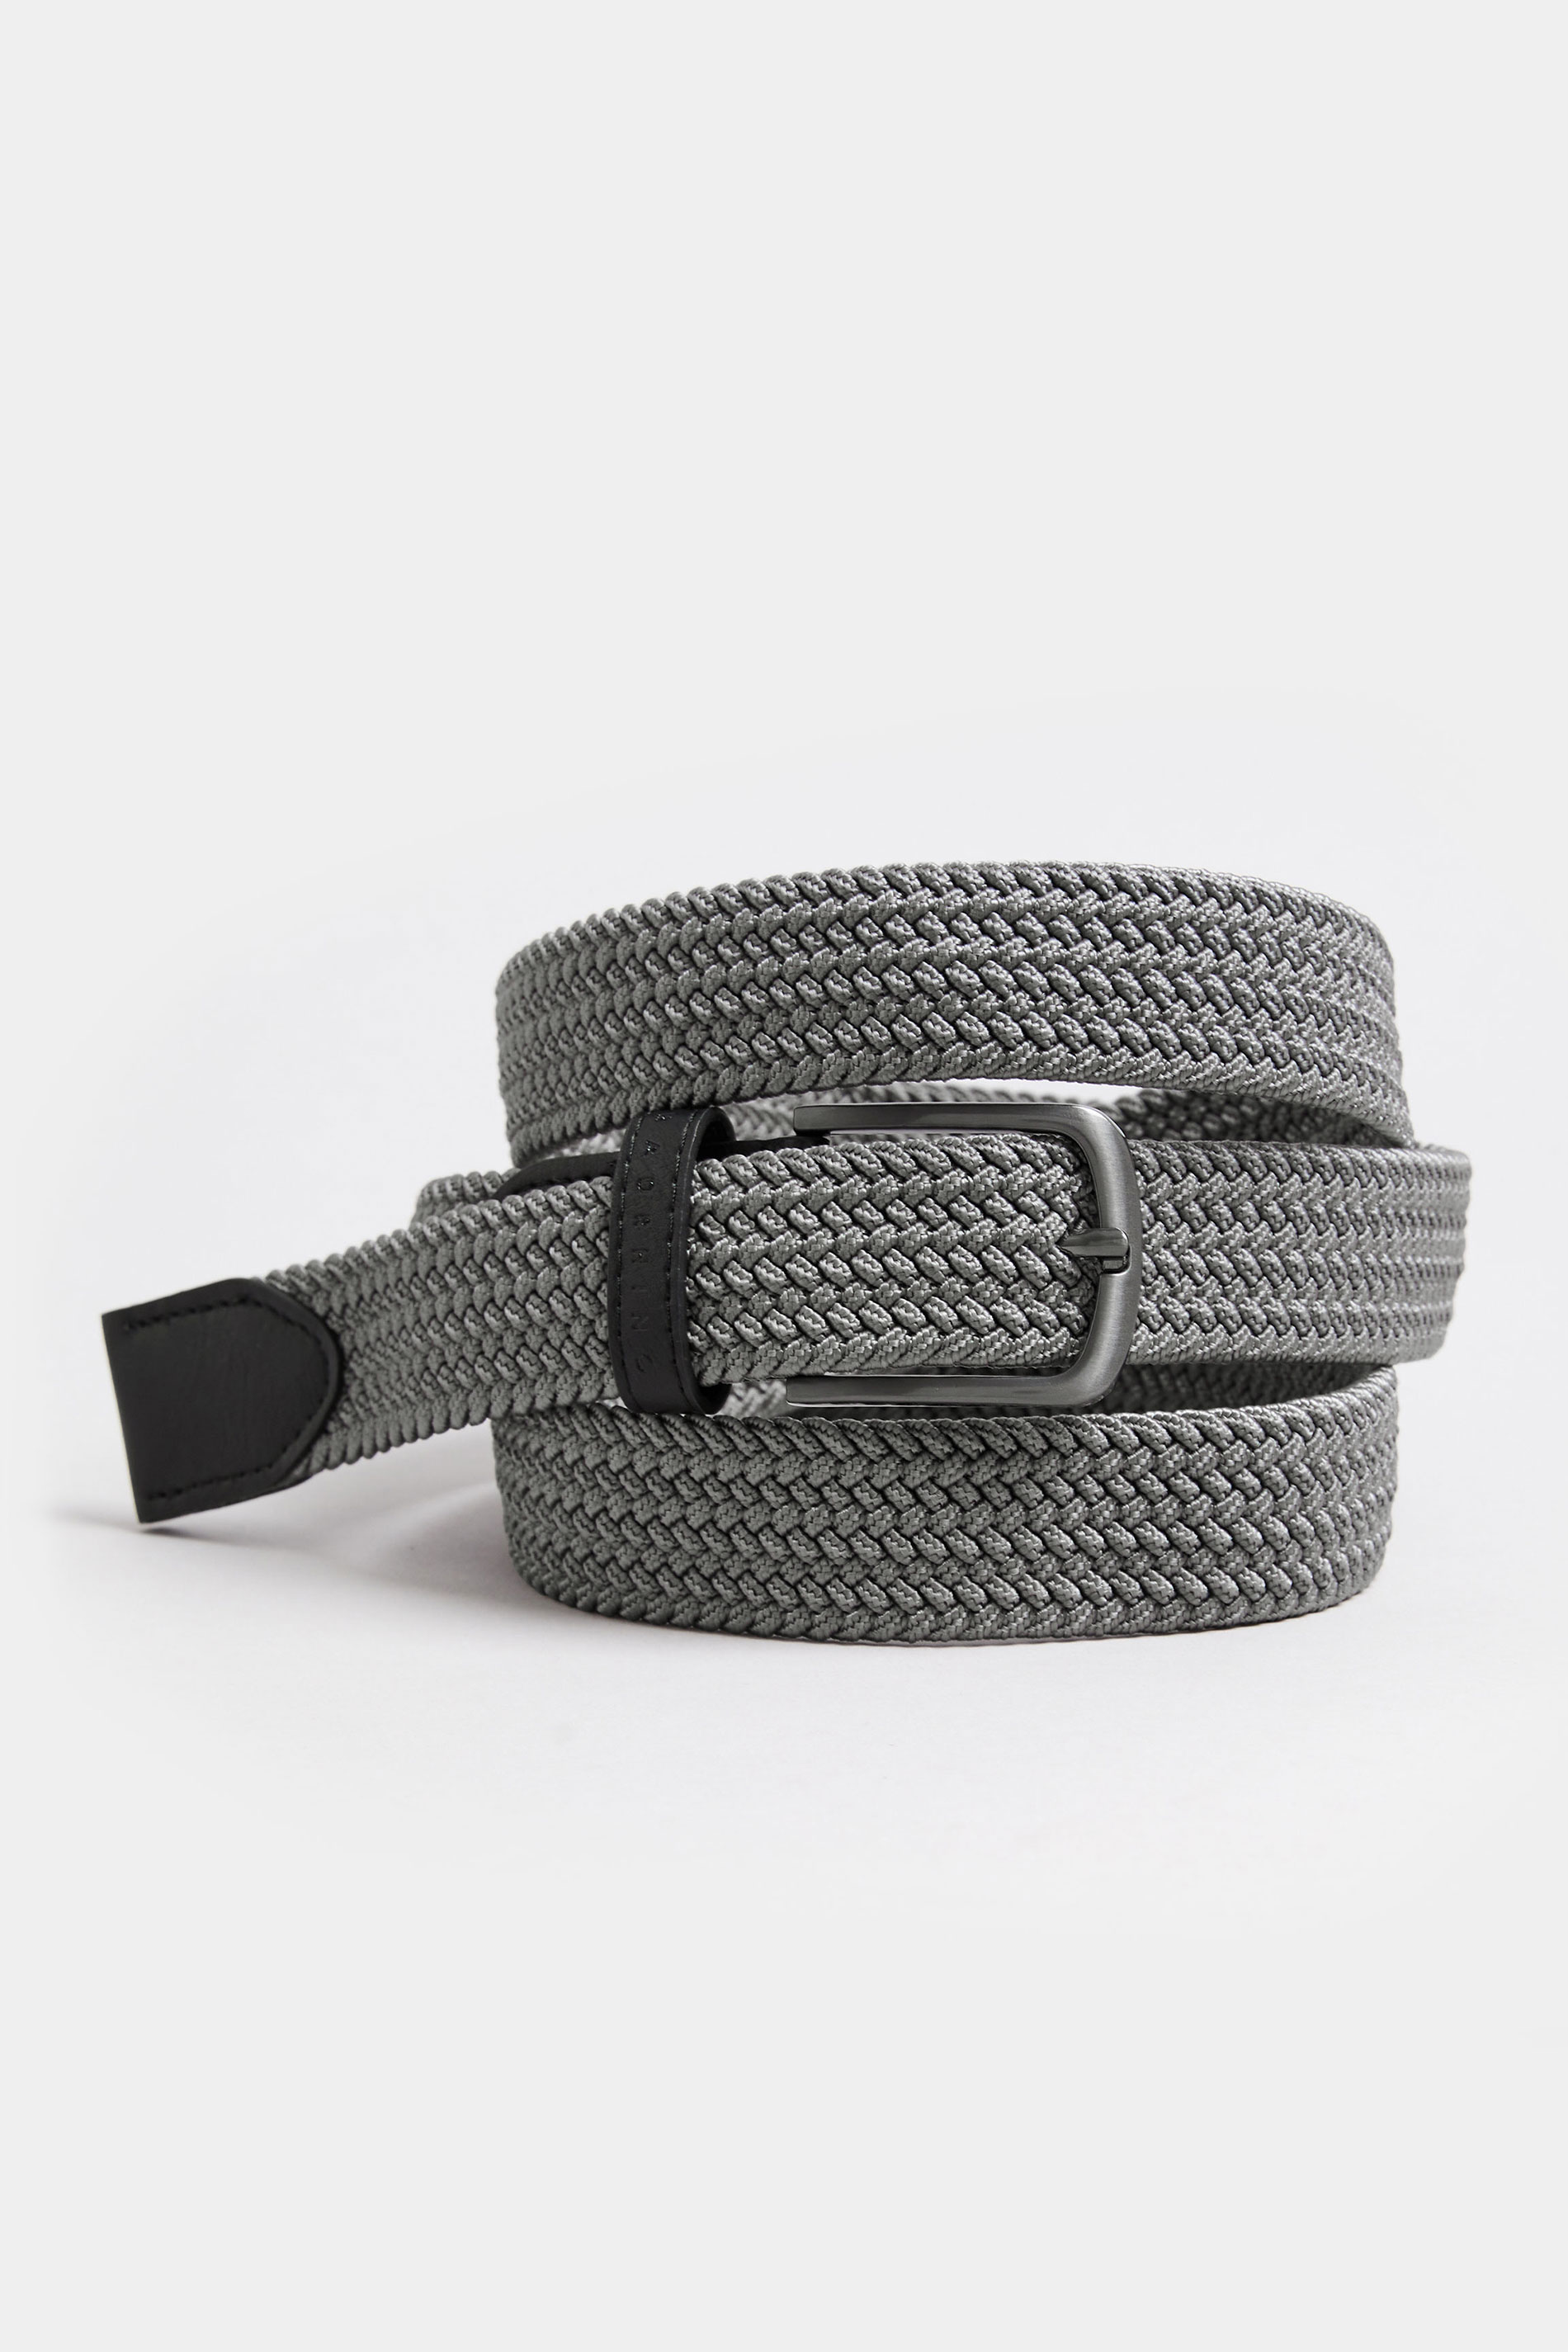 RHINO FLEX Grey Flex Elastic Belt | BadRhino 3